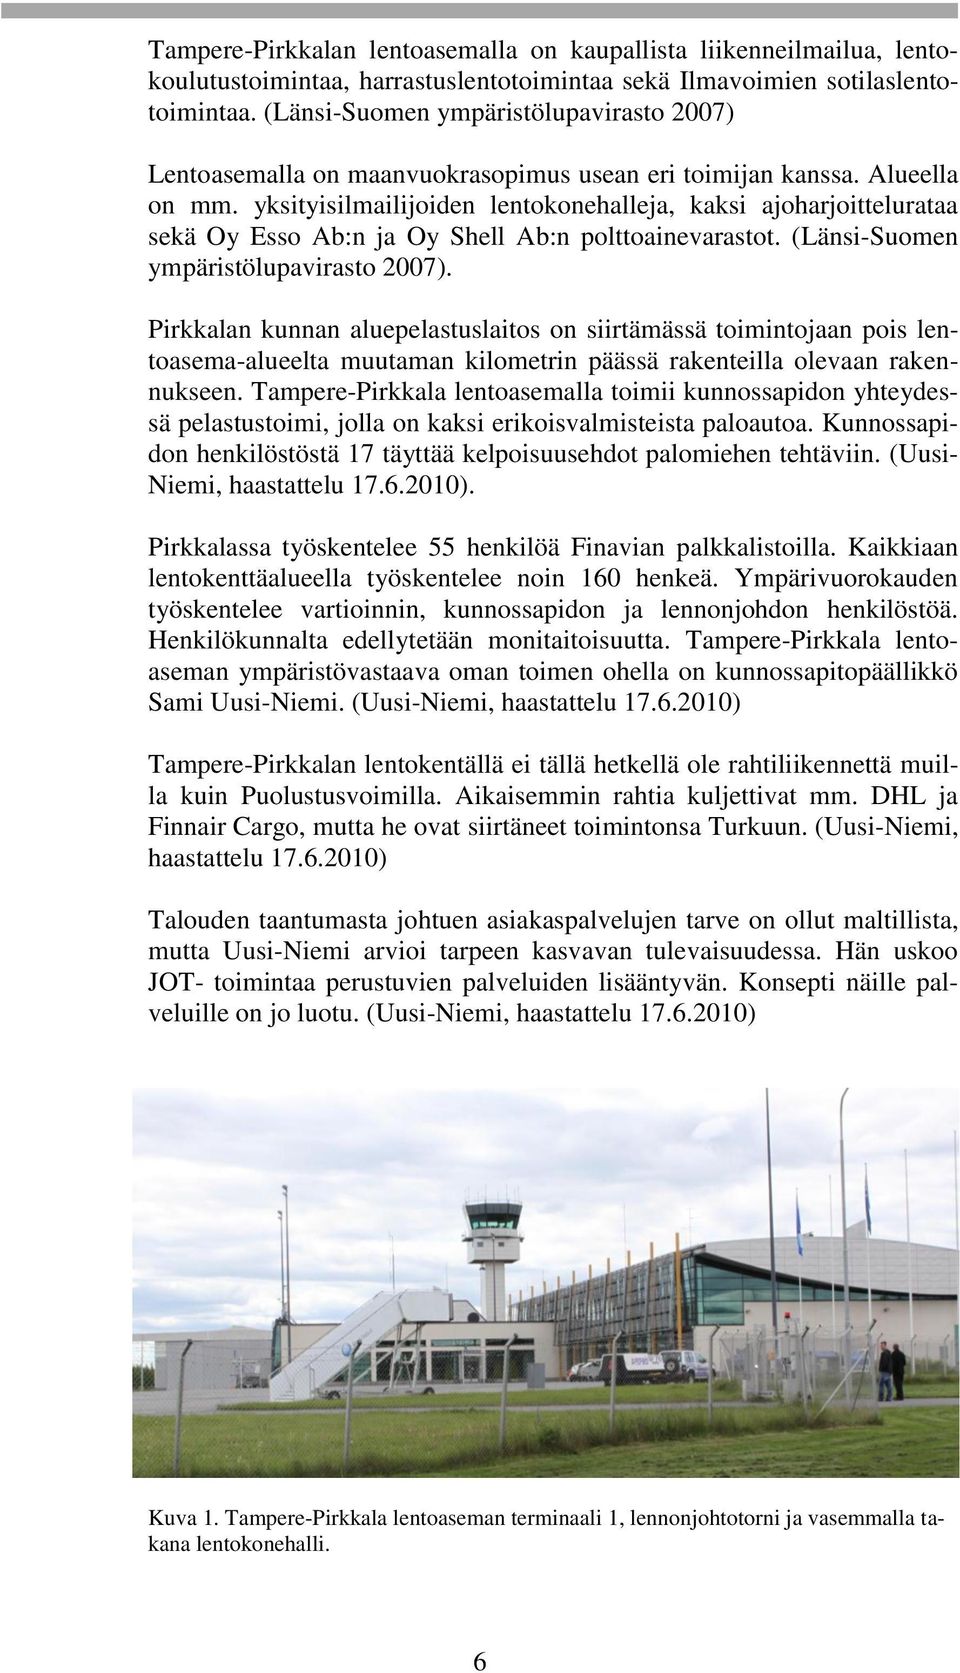 yksityisilmailijoiden lentokonehalleja, kaksi ajoharjoittelurataa sekä Oy Esso Ab:n ja Oy Shell Ab:n polttoainevarastot. (Länsi-Suomen ympäristölupavirasto 2007).